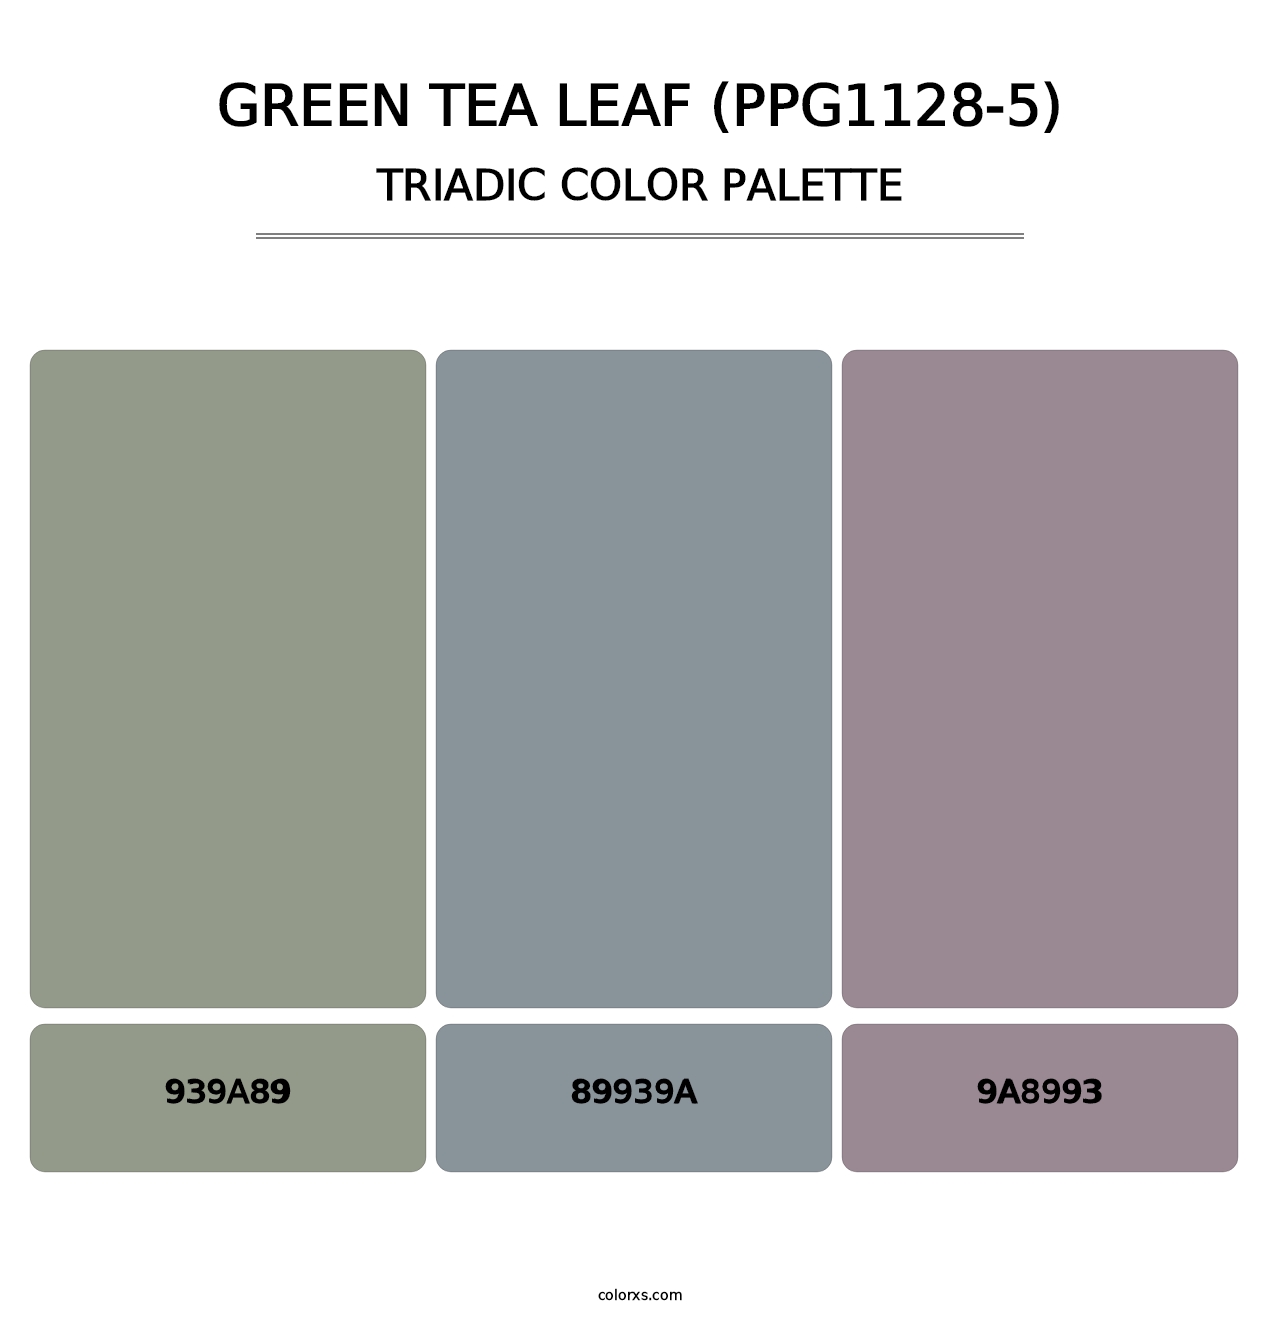 Green Tea Leaf (PPG1128-5) - Triadic Color Palette